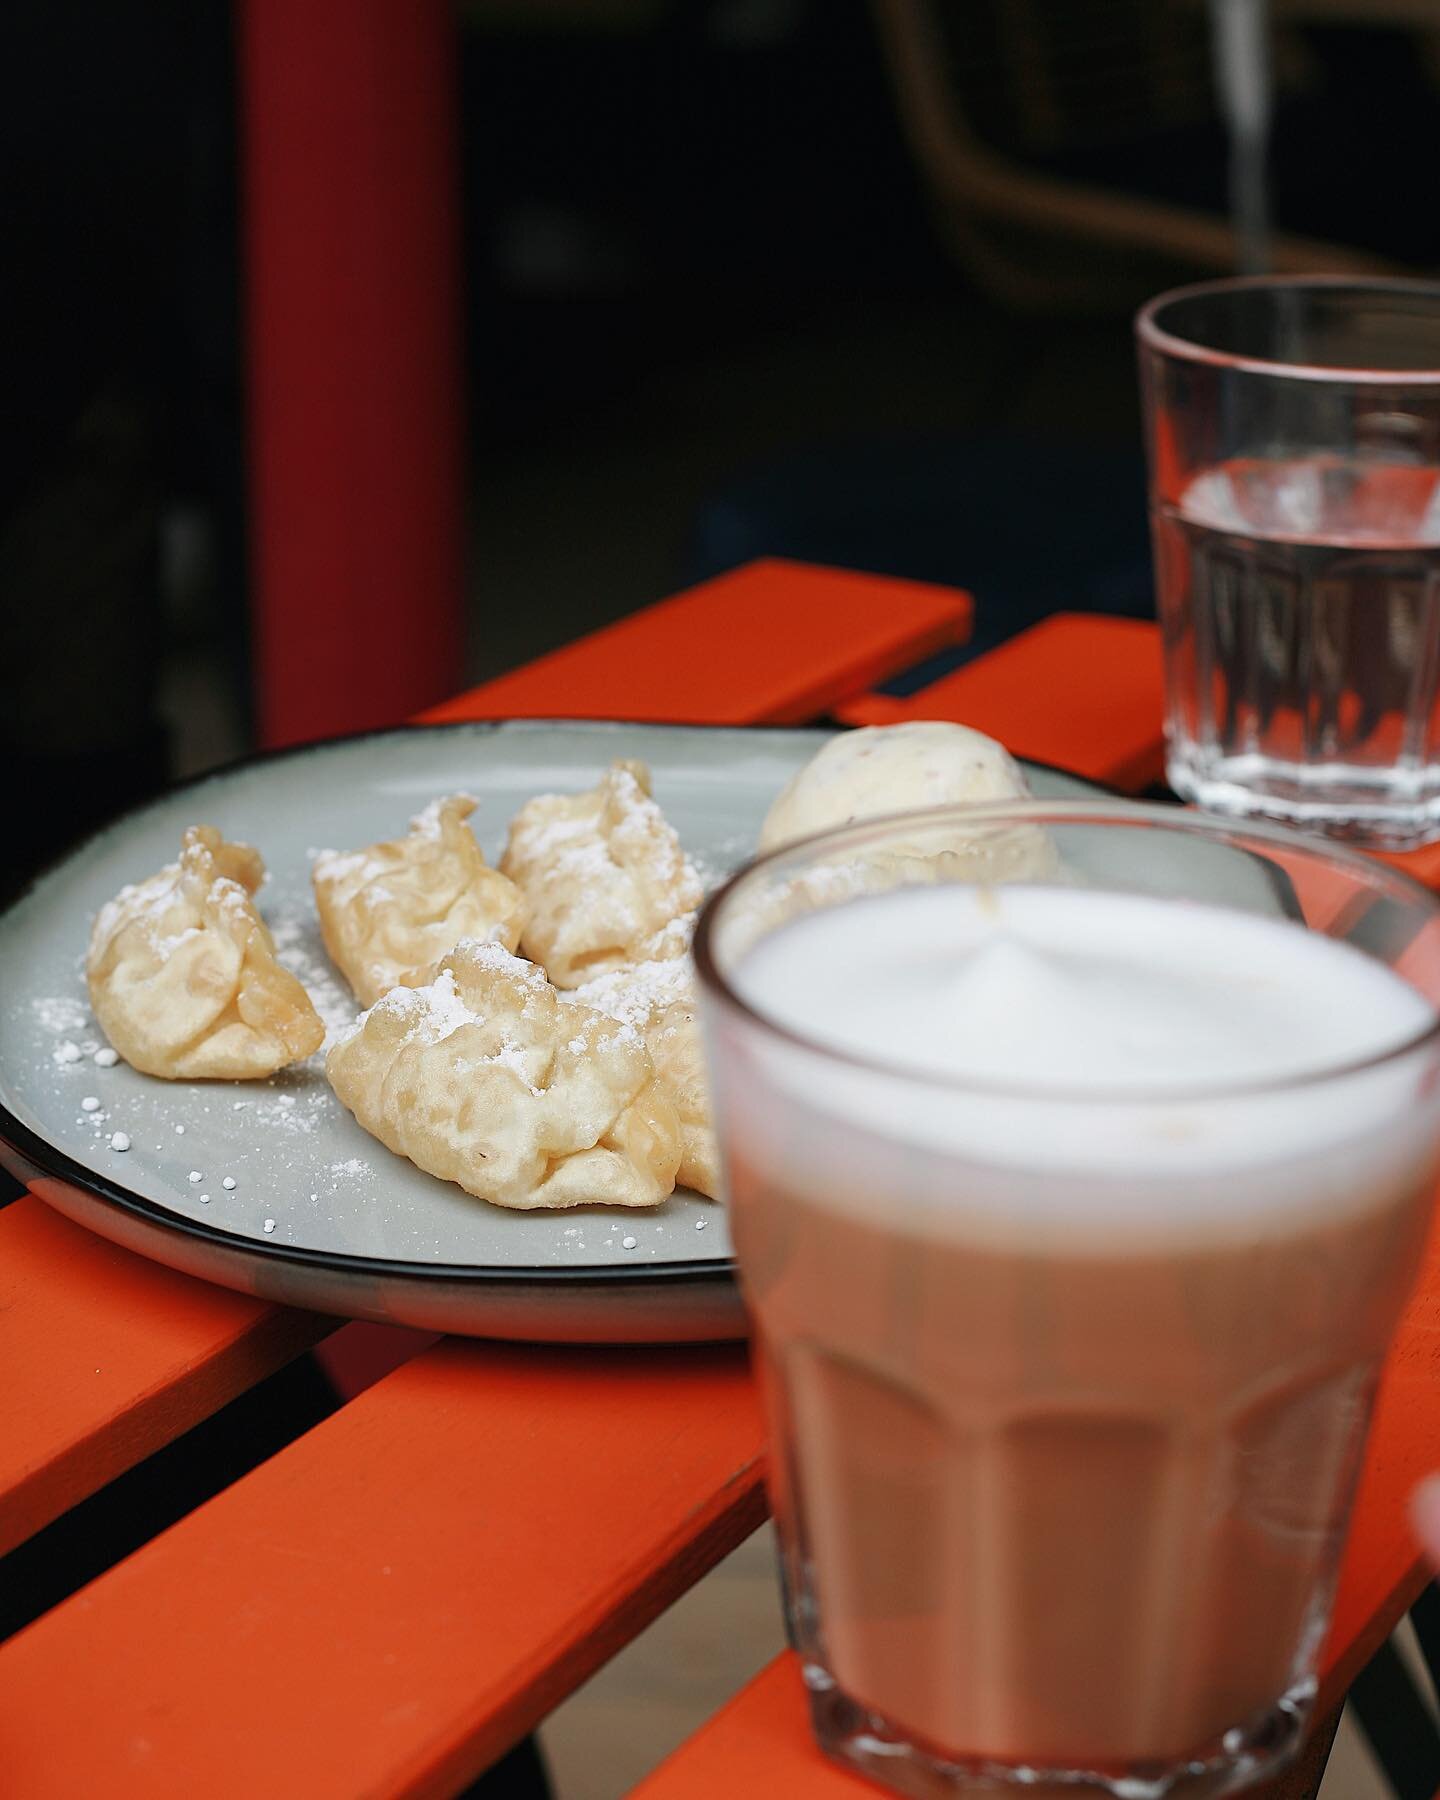 Chaud pour un Latte avec des gyoza fourr&eacute; aux pommes et une boule de glace vanille de Madagascar maison?? 
#latte #restaurantparis #brunch #glace #gyoza #food